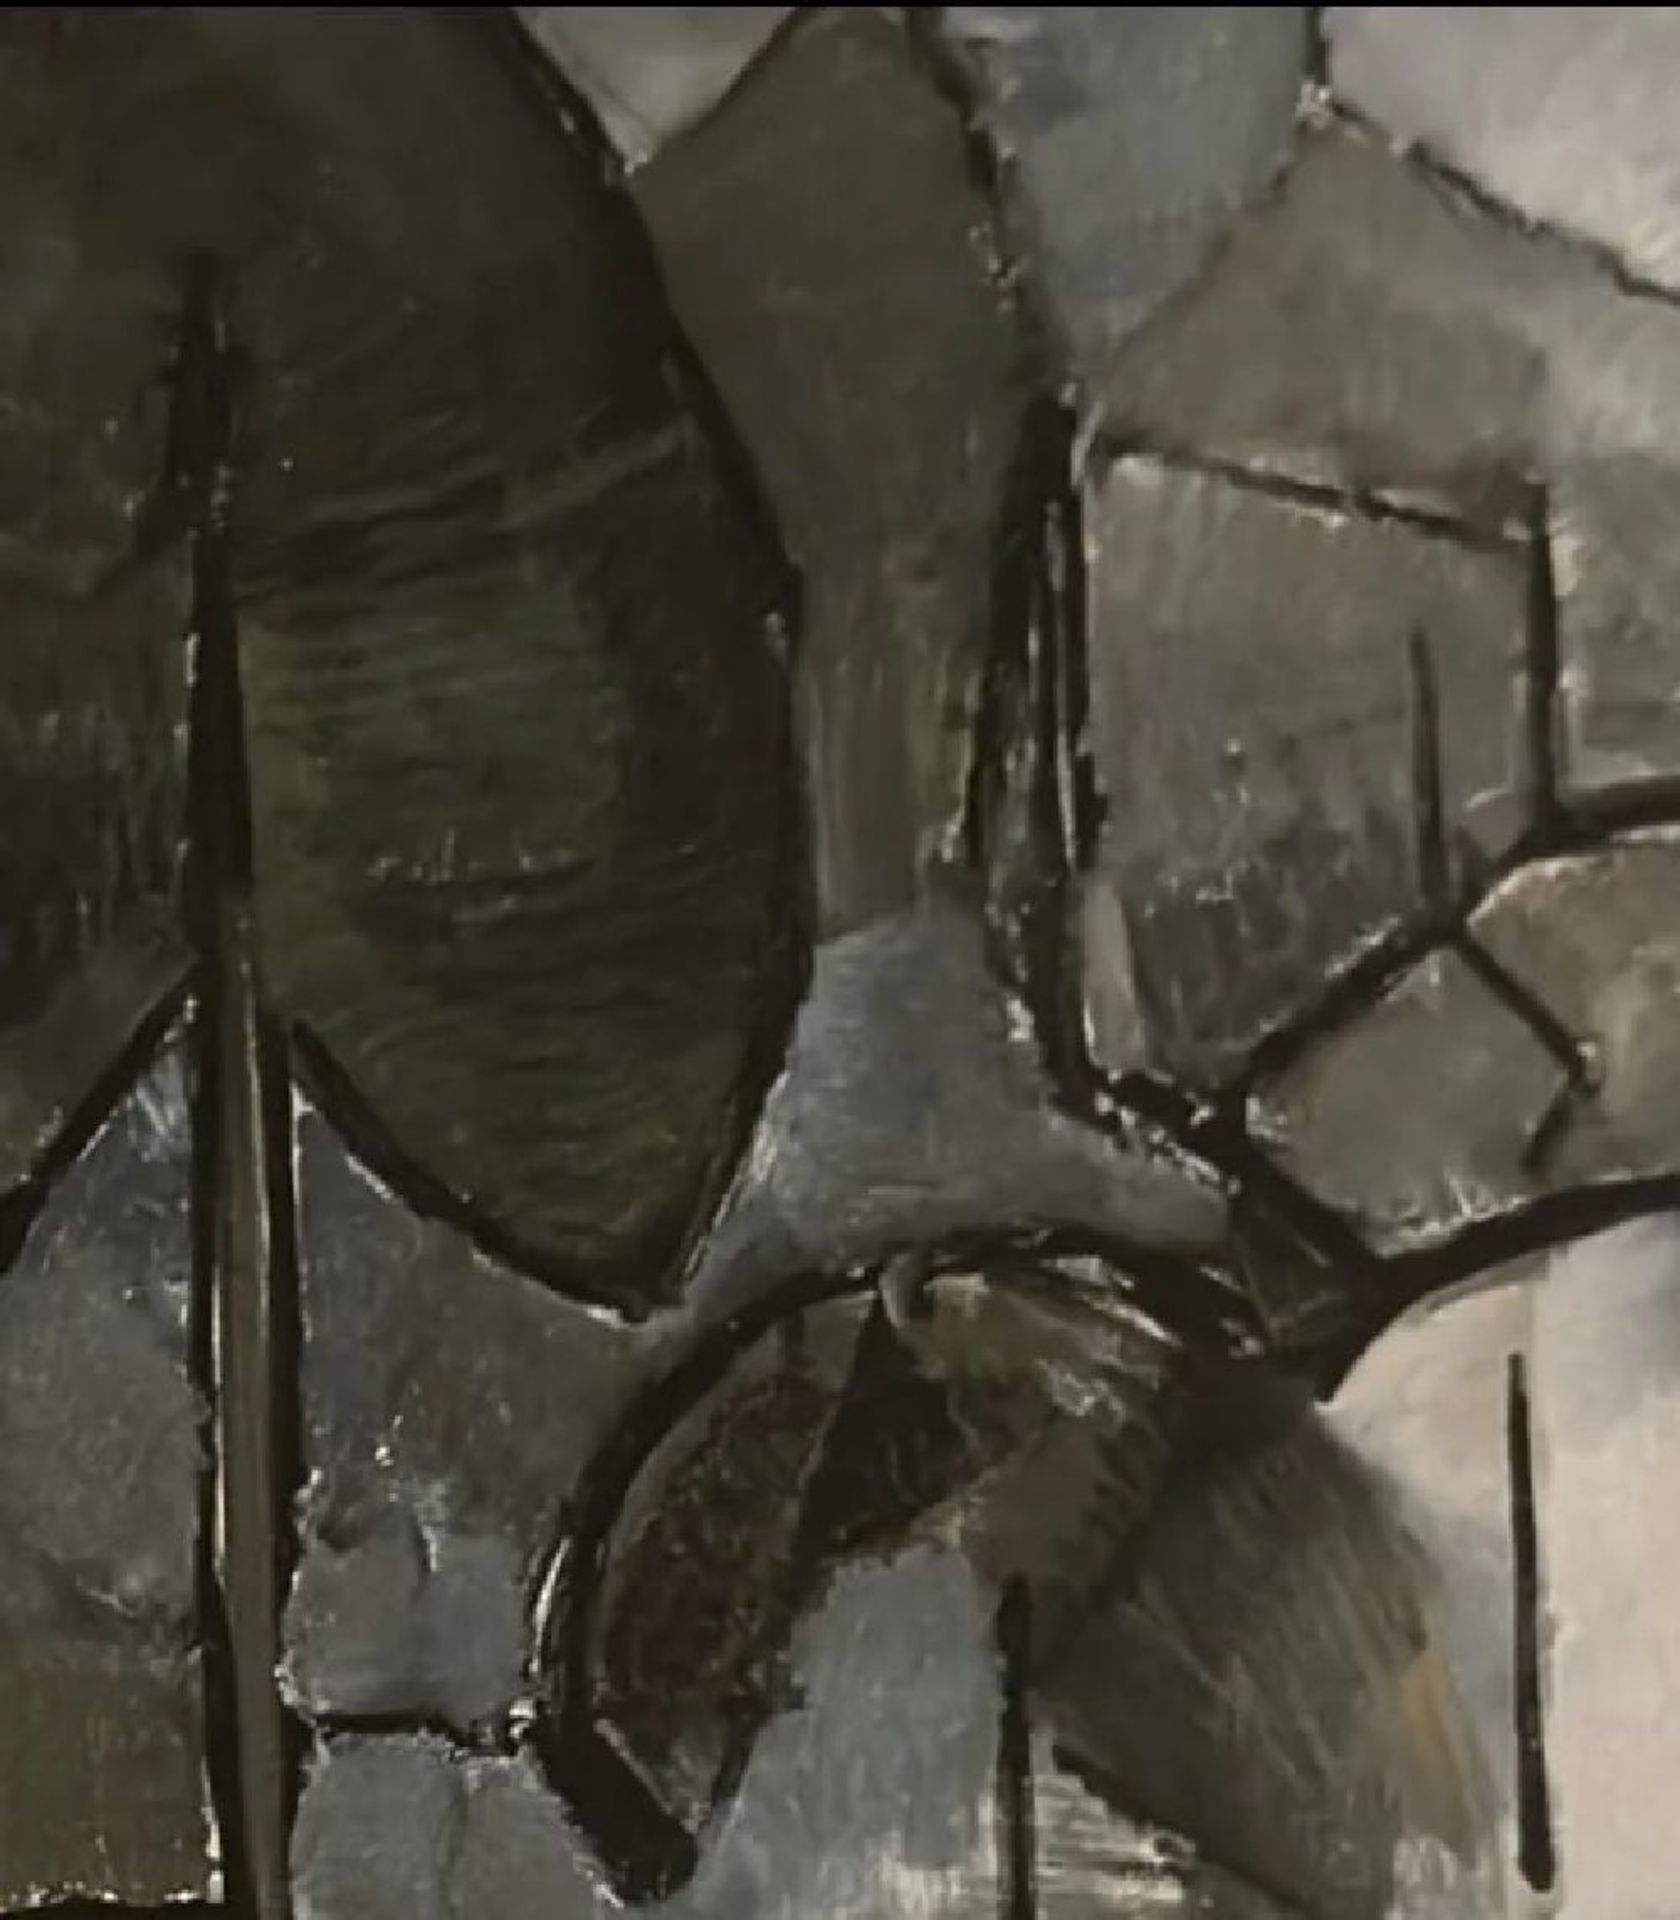 Piet Mondrian "Composition" Pin - Bild 4 aus 6